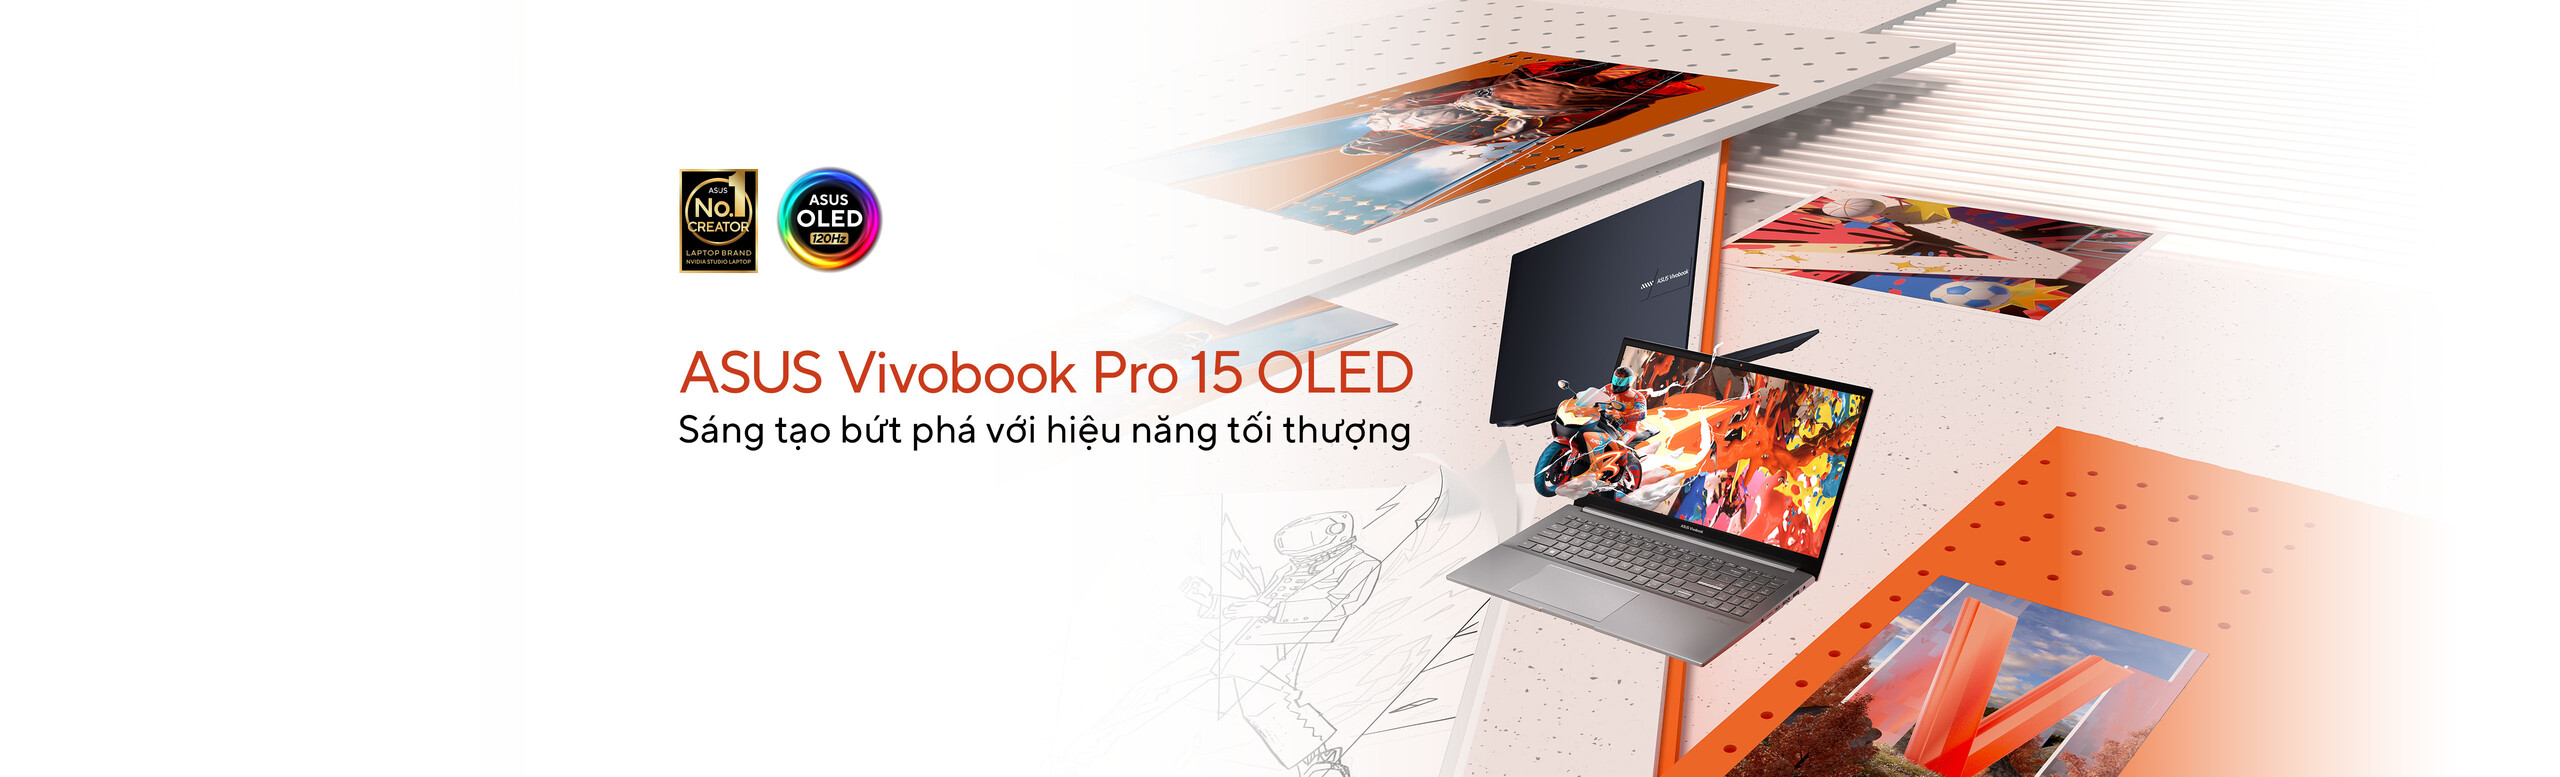 Vivobook Pro M6500